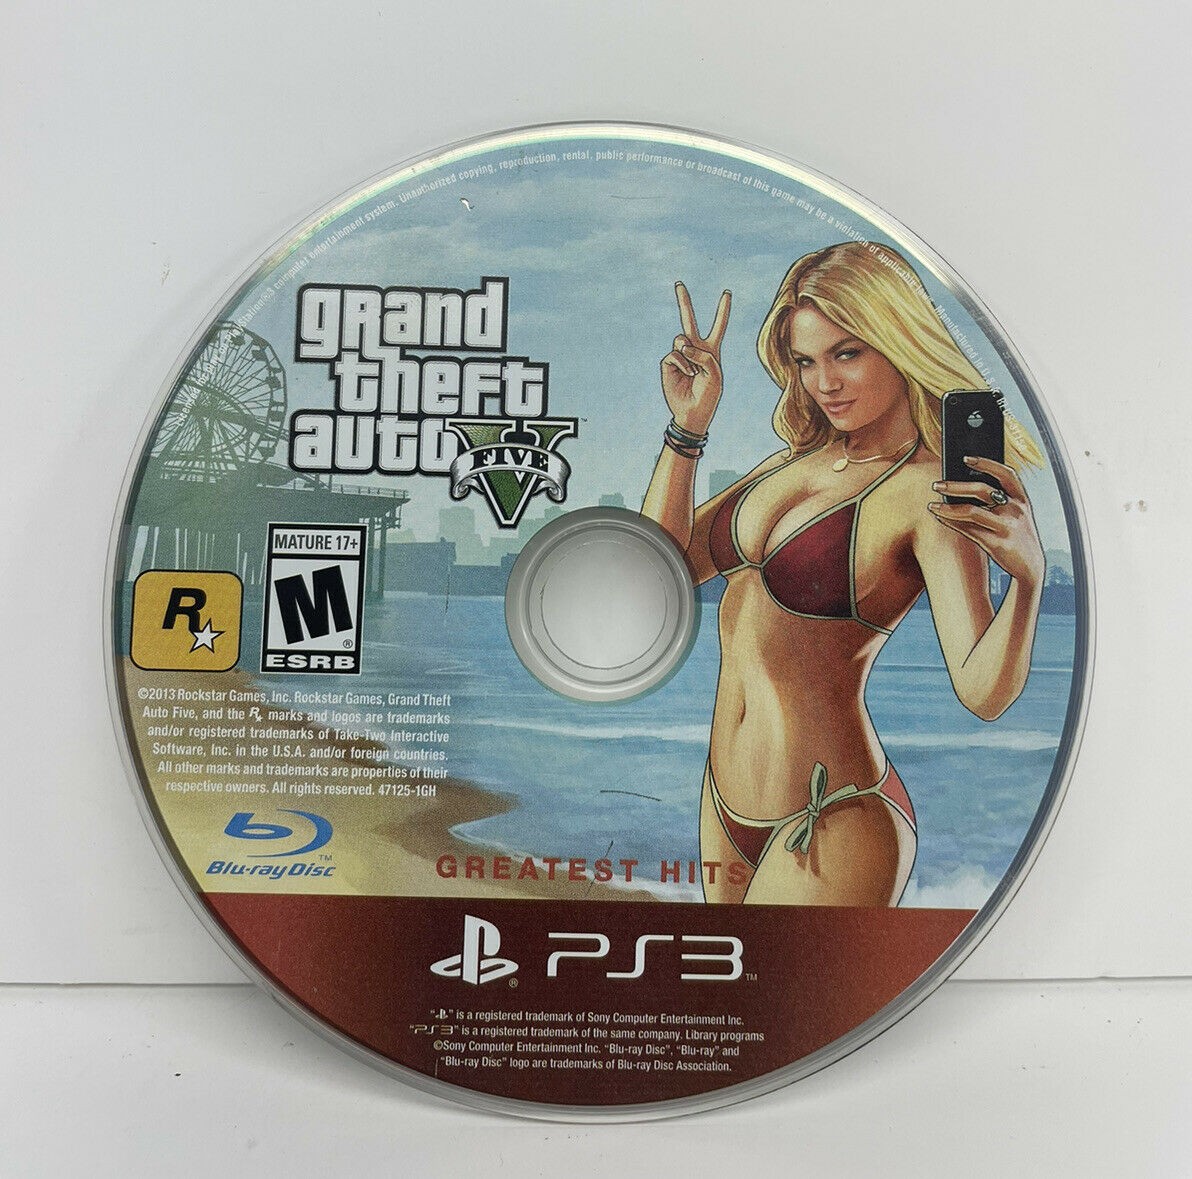 Jogo Grand Theft Auto: San Andreas (gta) Hits - Ps3 em Promoção na